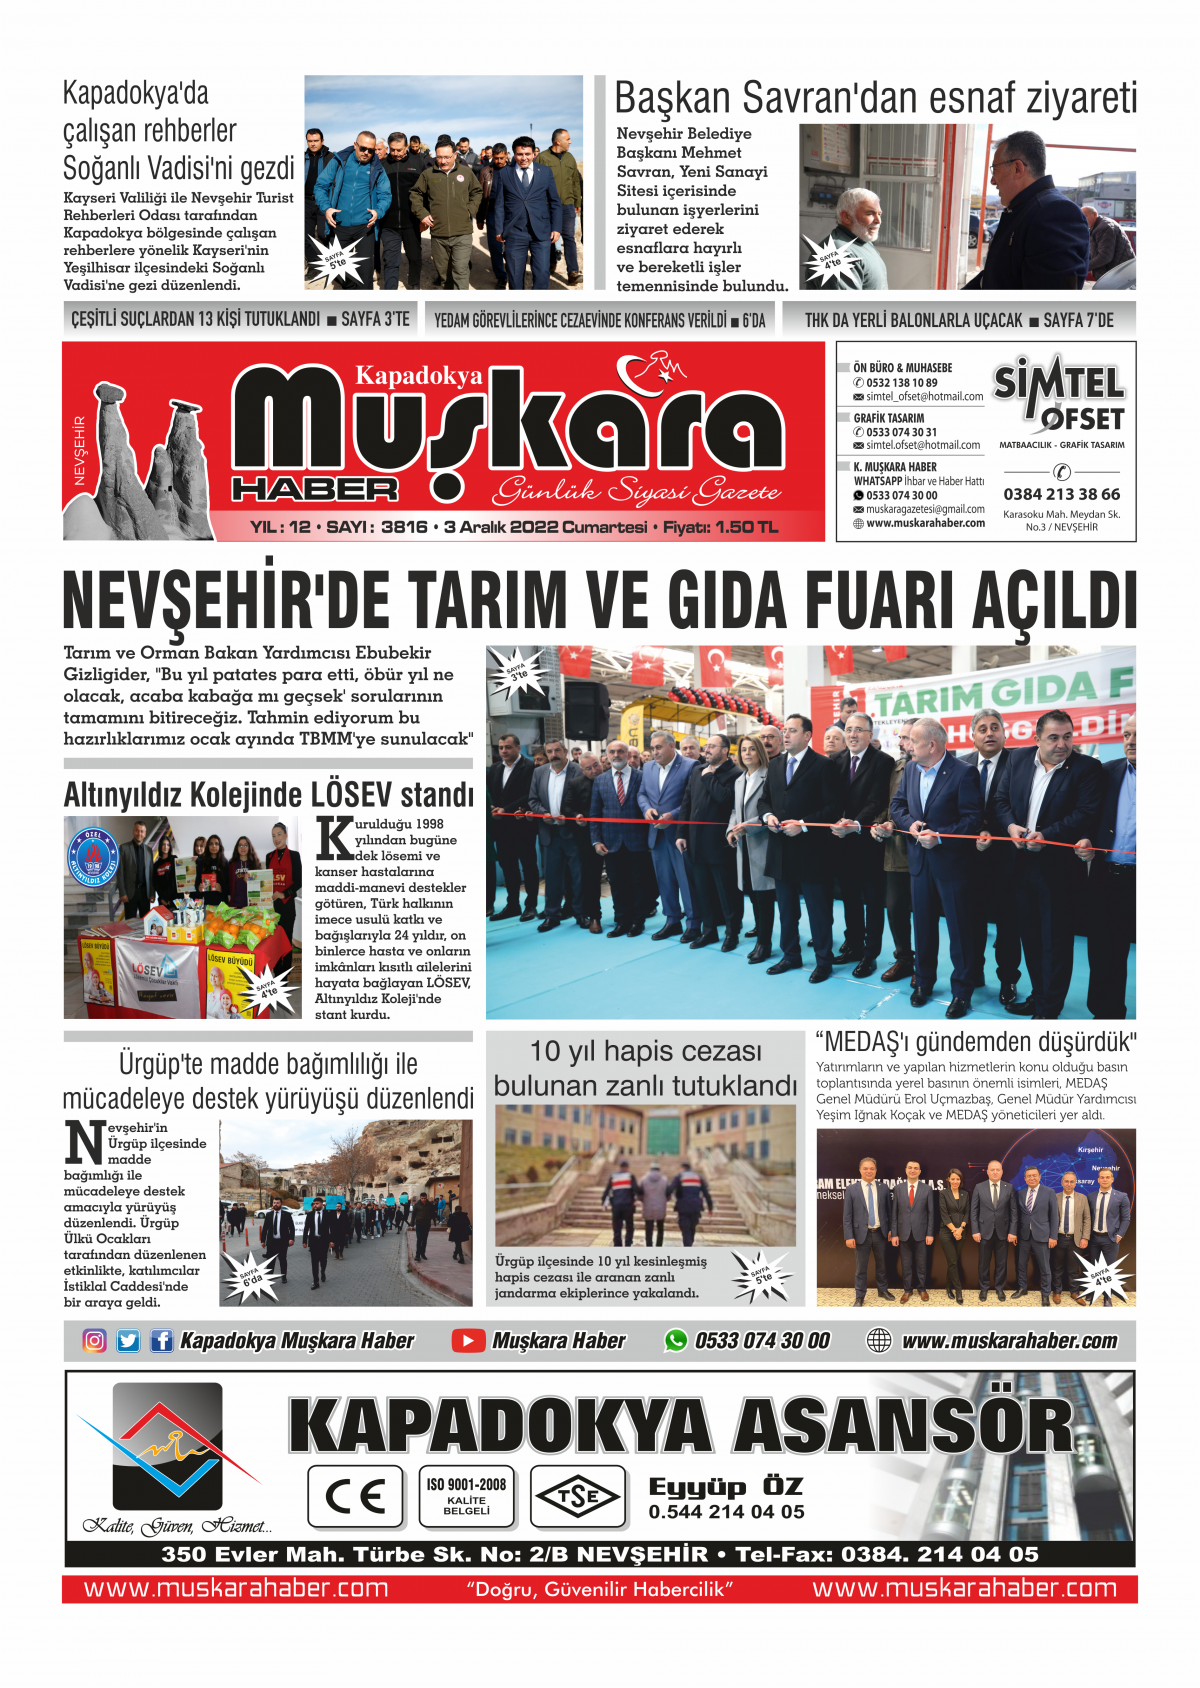 Muskara Haber - Nevsehir haberleri - 03.12.2022 Manşeti